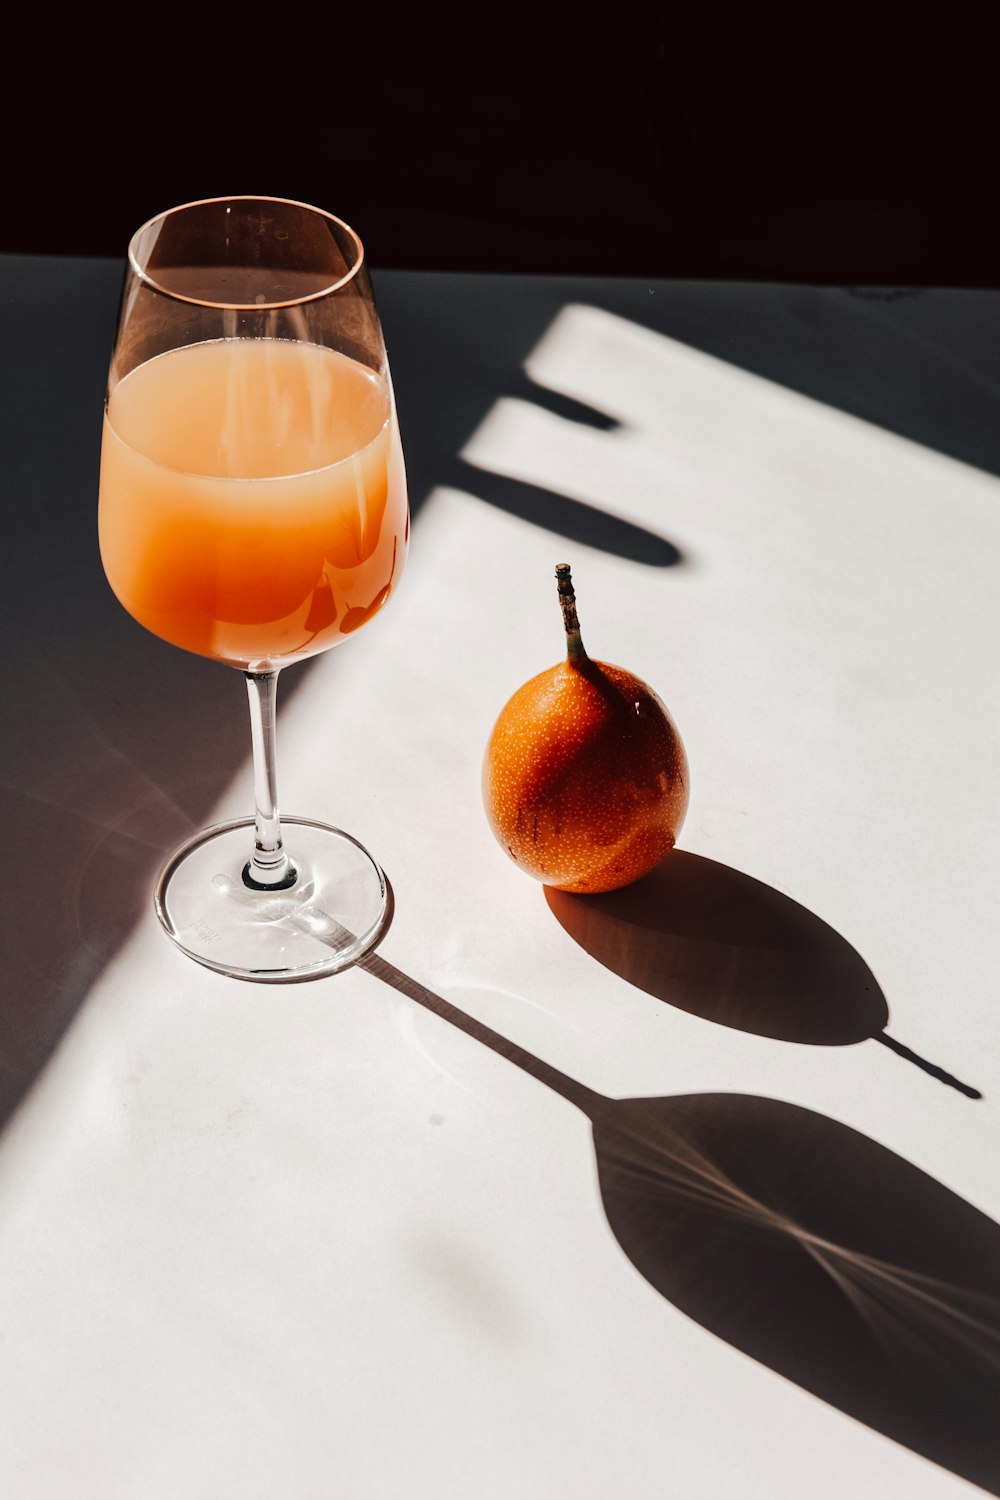 은색 숟가락 옆에 투명한 와인 잔에 오렌지 주스